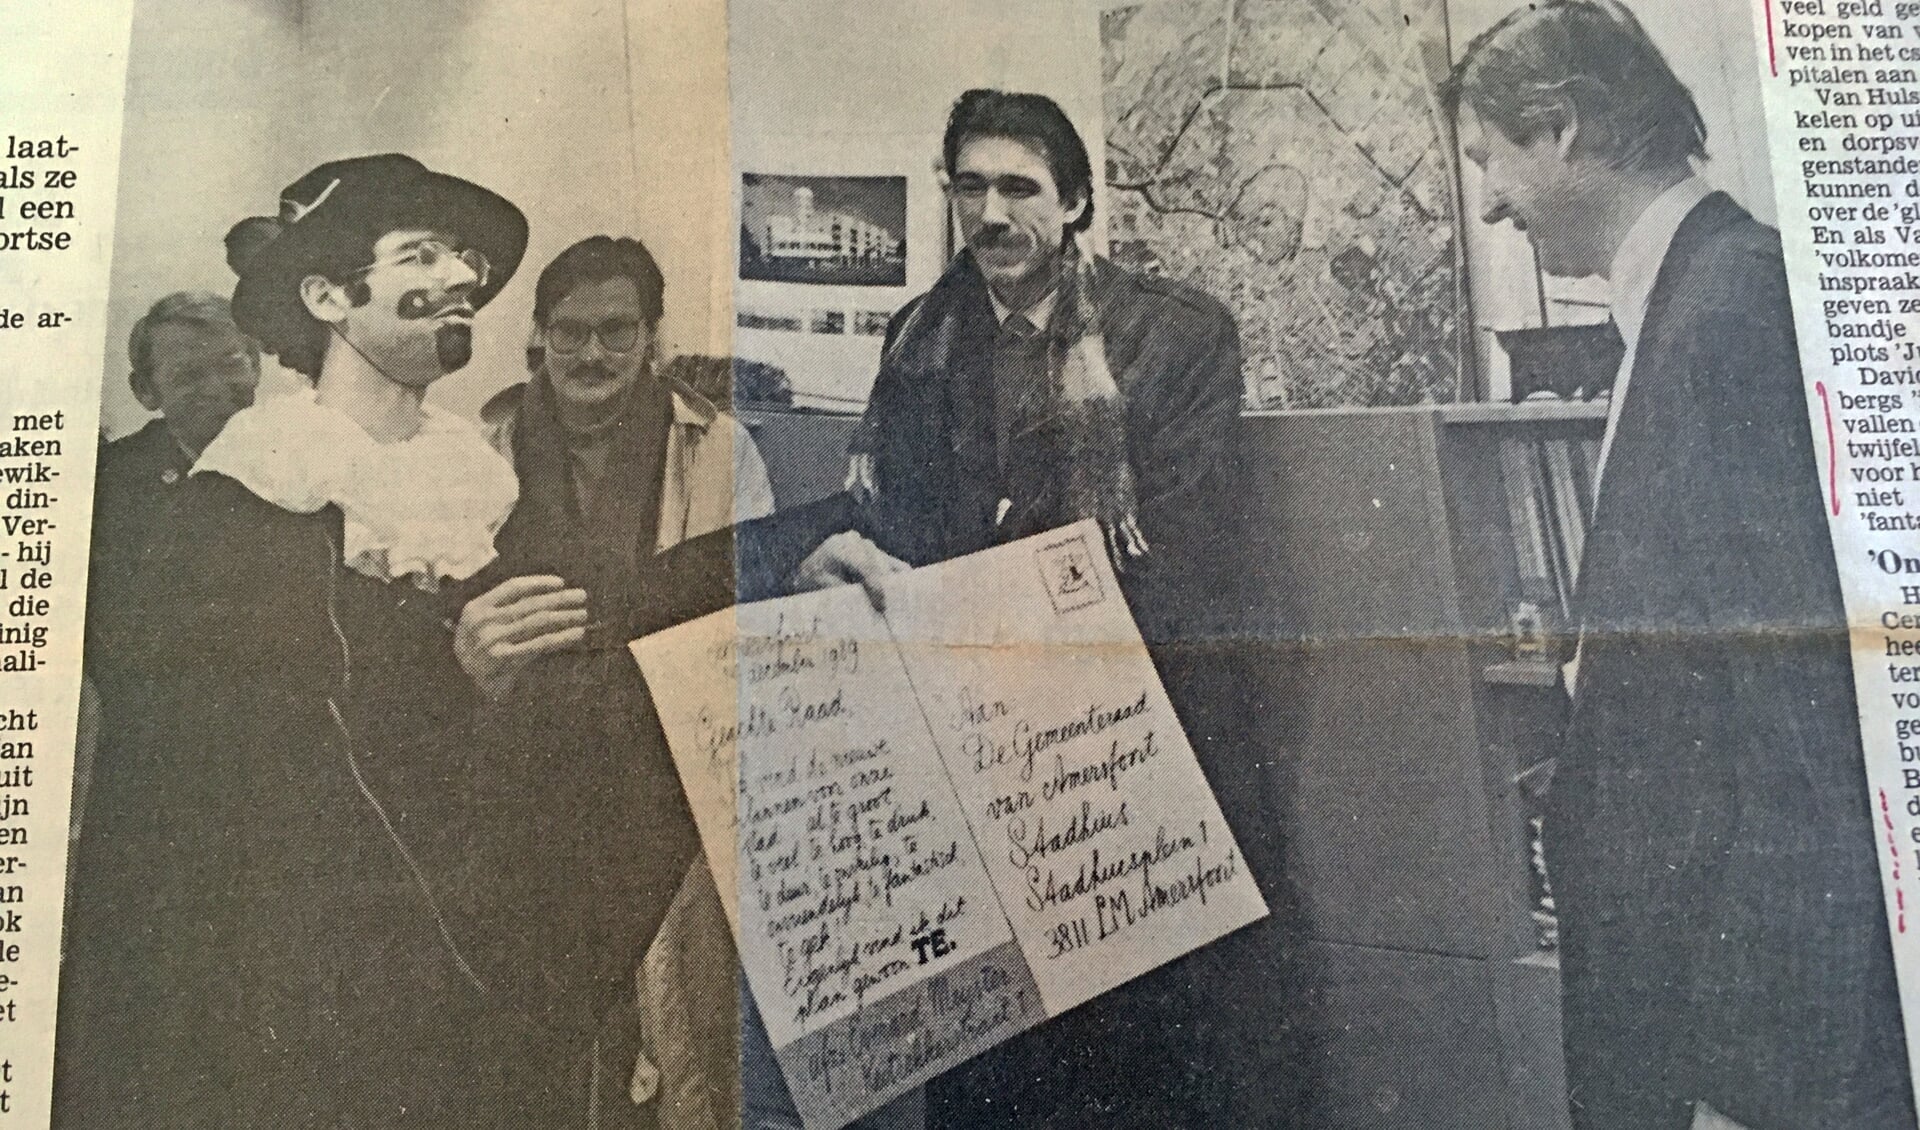 Strijders van het eerste uur tegen het Centrumplan, Daan van Hulst (links verkleed als Everard Meyster) en At Ypenburg, (in het midden) bieden wethouder Fons Asselbergs een bezwaarschrift aan. (De Amersfoortse Courant 10 januari 1990).